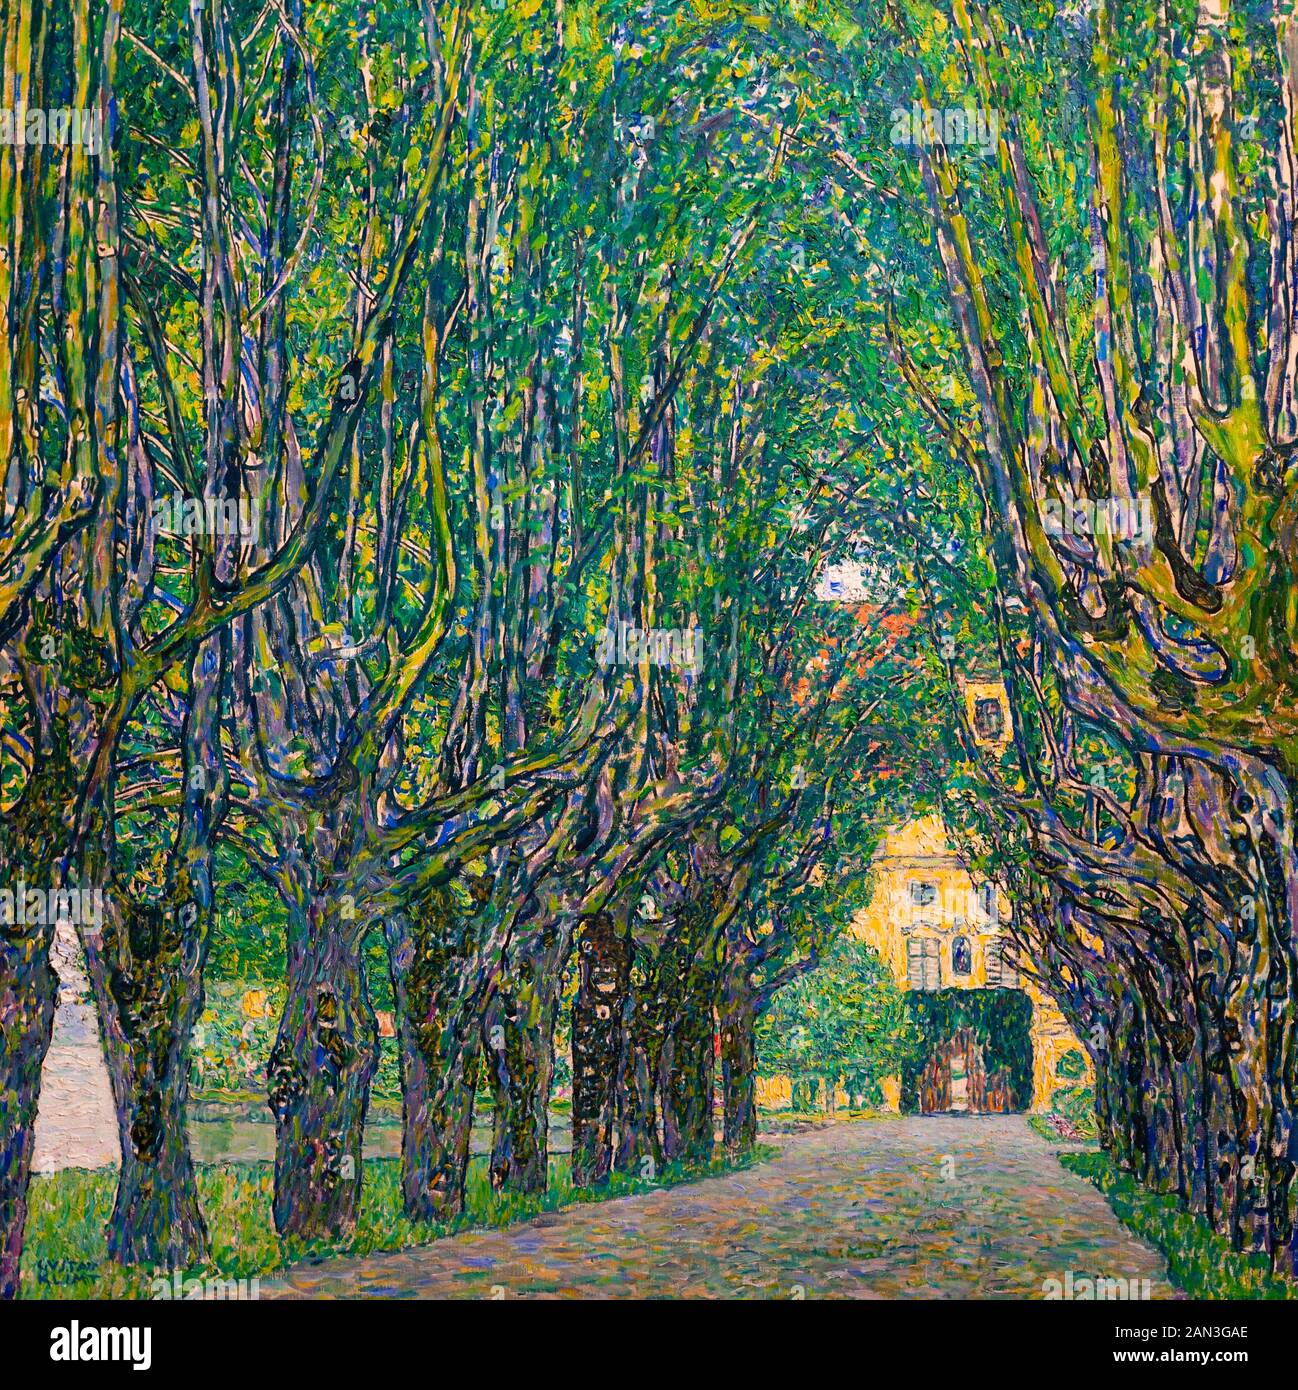 Im Schloss Kammer Park Avenue (Avenue zu Kammer Palace). 1912. Von den Österreichischen symbolistische Maler Gustav Klimt. Belvedere Museum, Wien, Österreich. Stockfoto